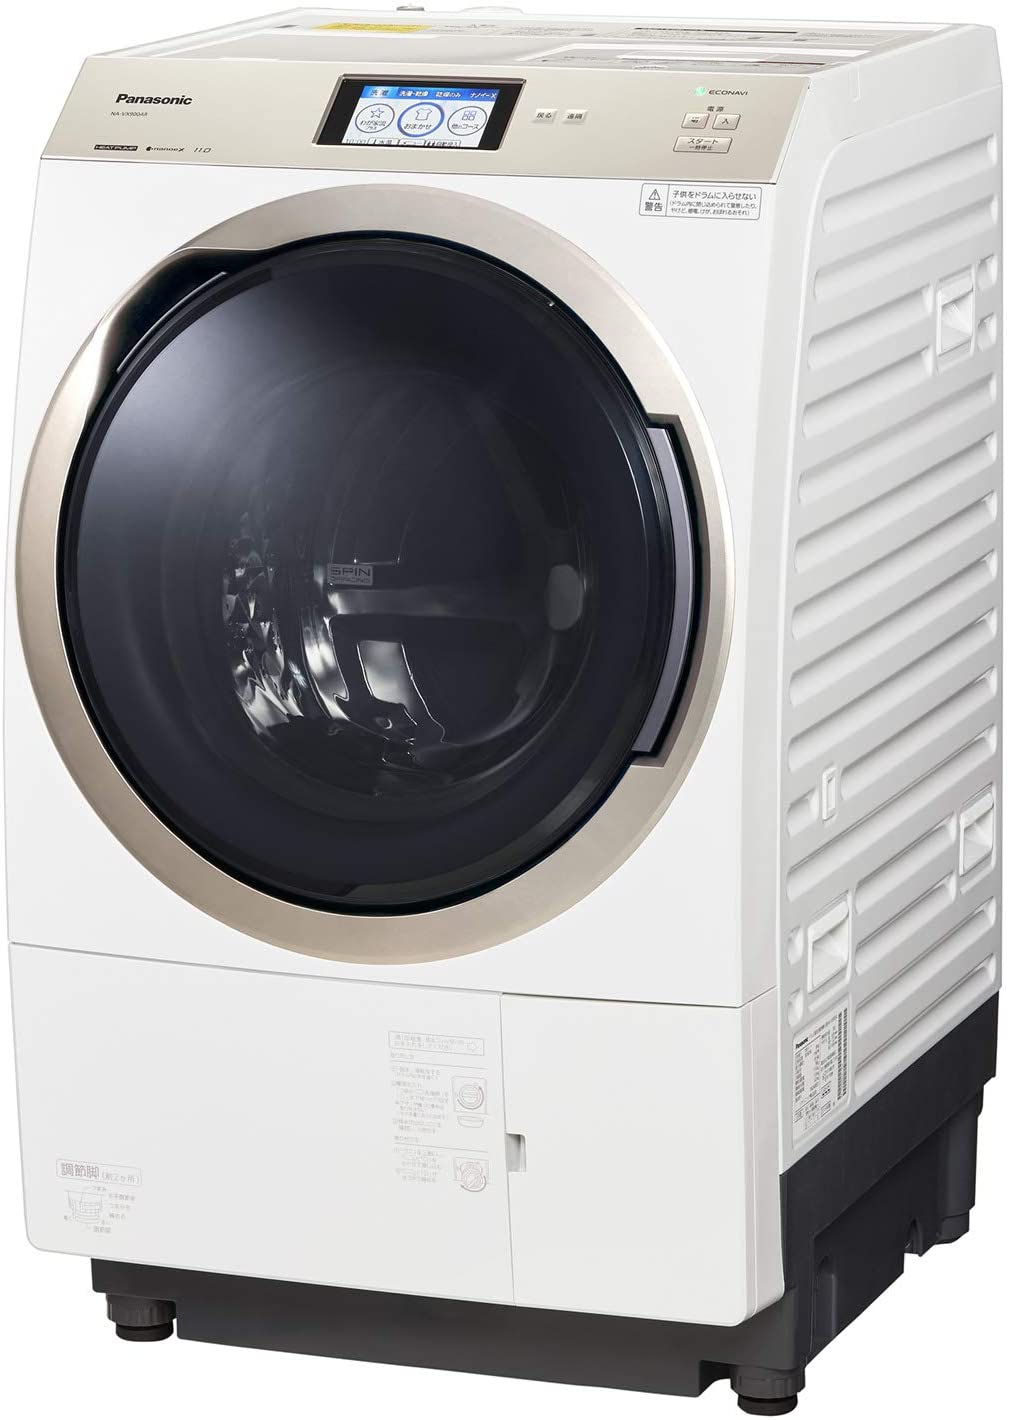 Panasonic(パナソニック) ななめドラム洗濯乾燥機 NA-VX900AL/Rの商品画像サムネ1 